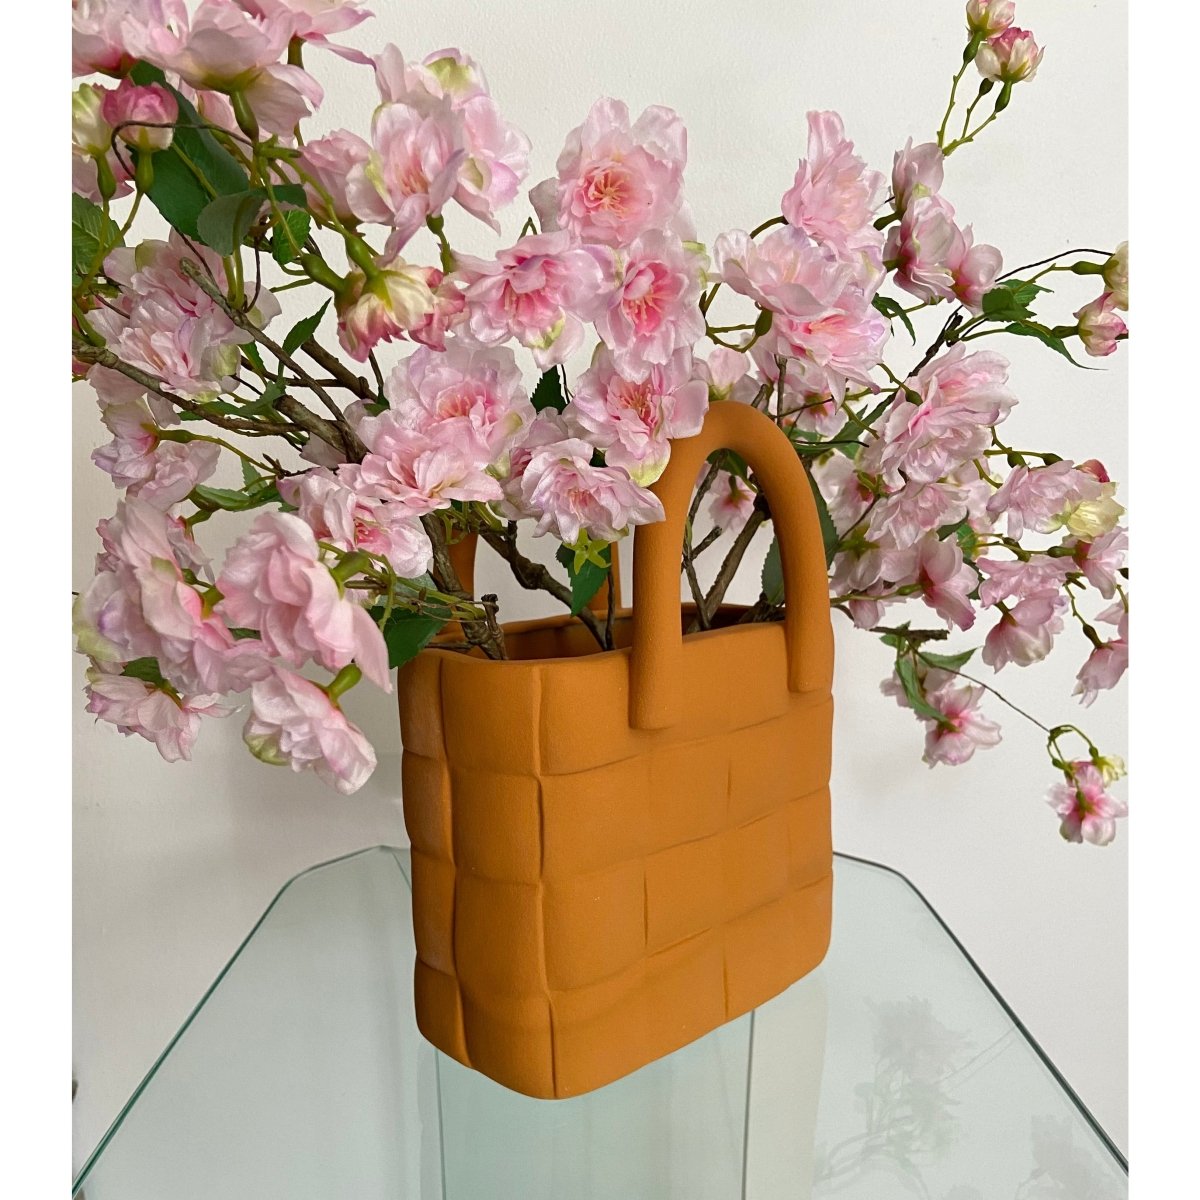 Ceramic Handbag Shape Flower Vase fashionable